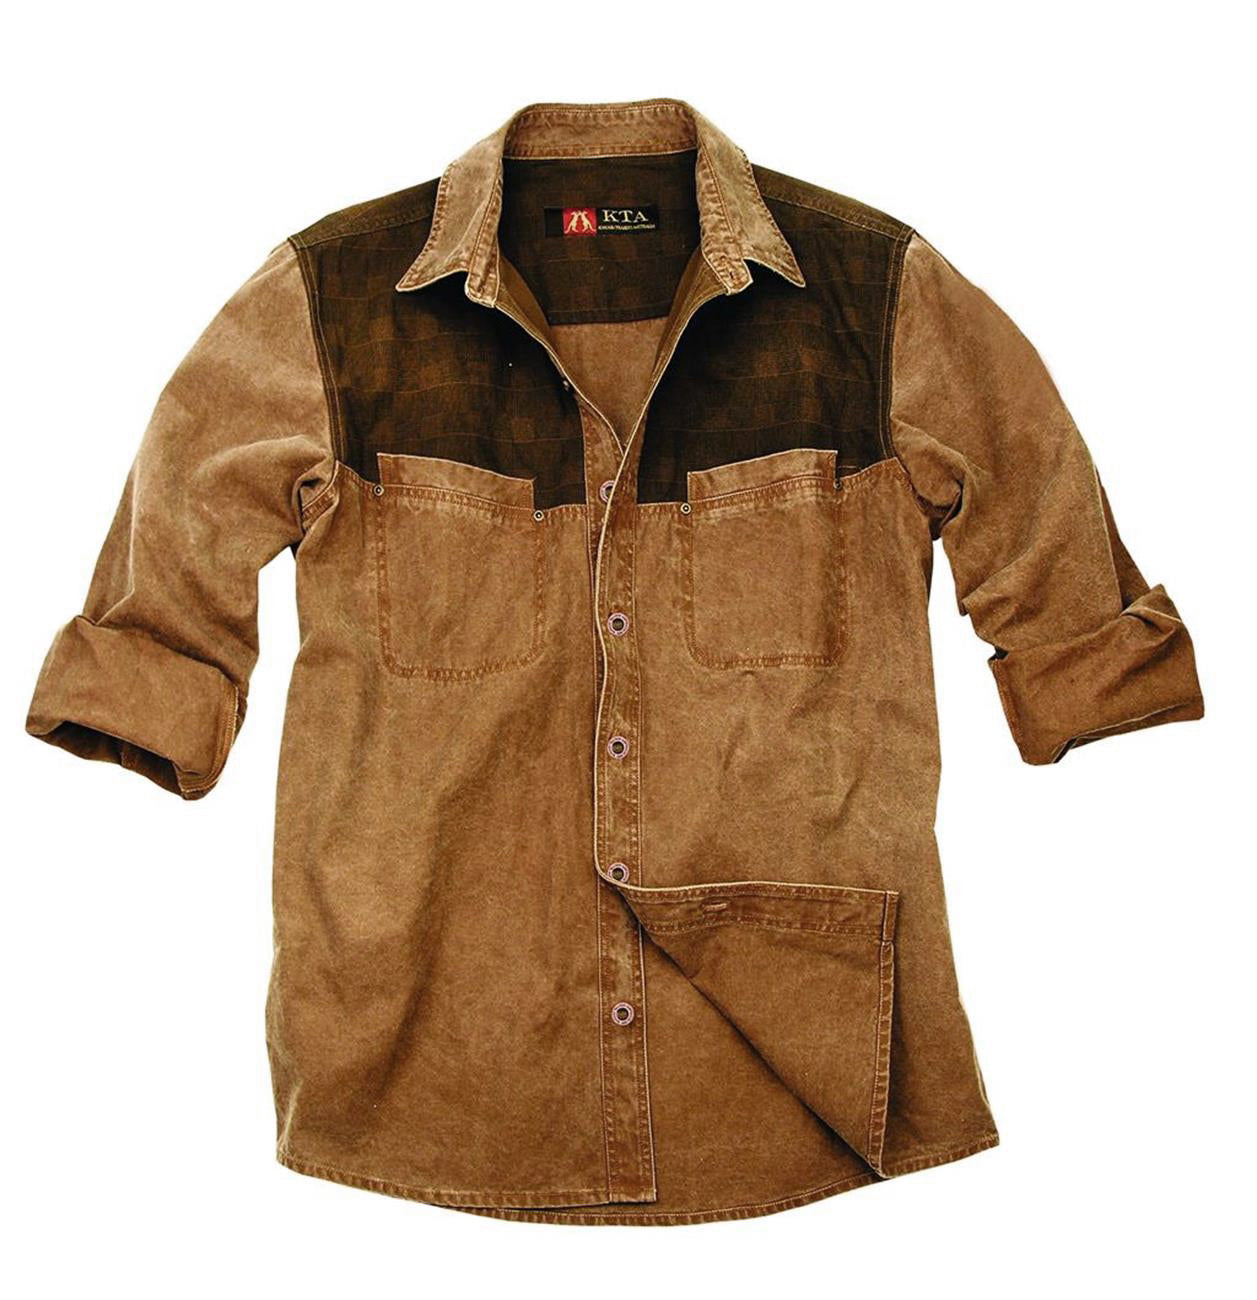 Herrenhemd aus leichter Baumwolle- farblich abgesetzt im Brustbereich